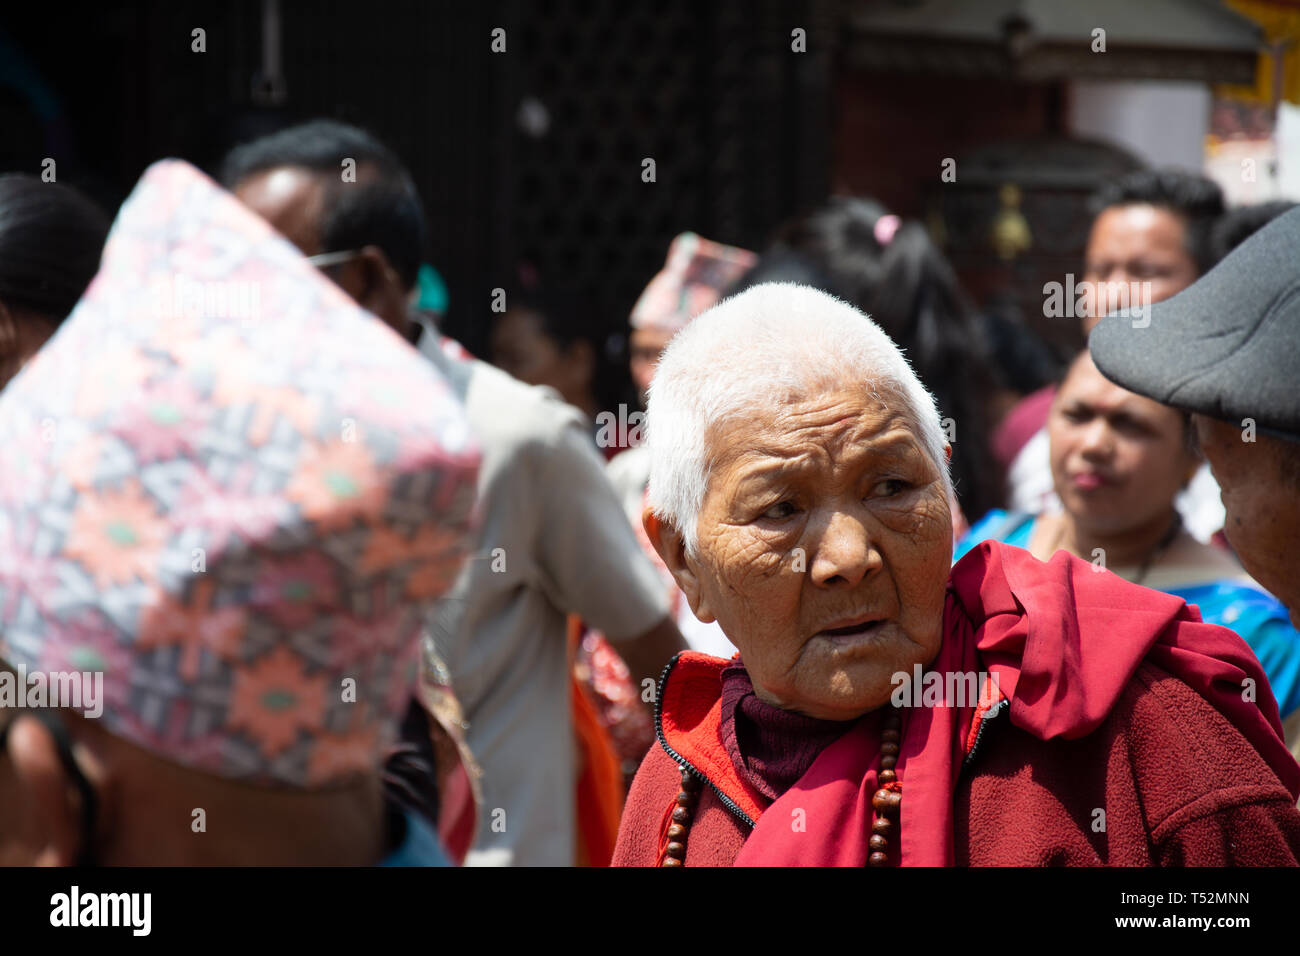 Kathmandu, Nepal - May 10, 2017: An old lama priest at the premises of the Bouddha stupa. Stock Photo